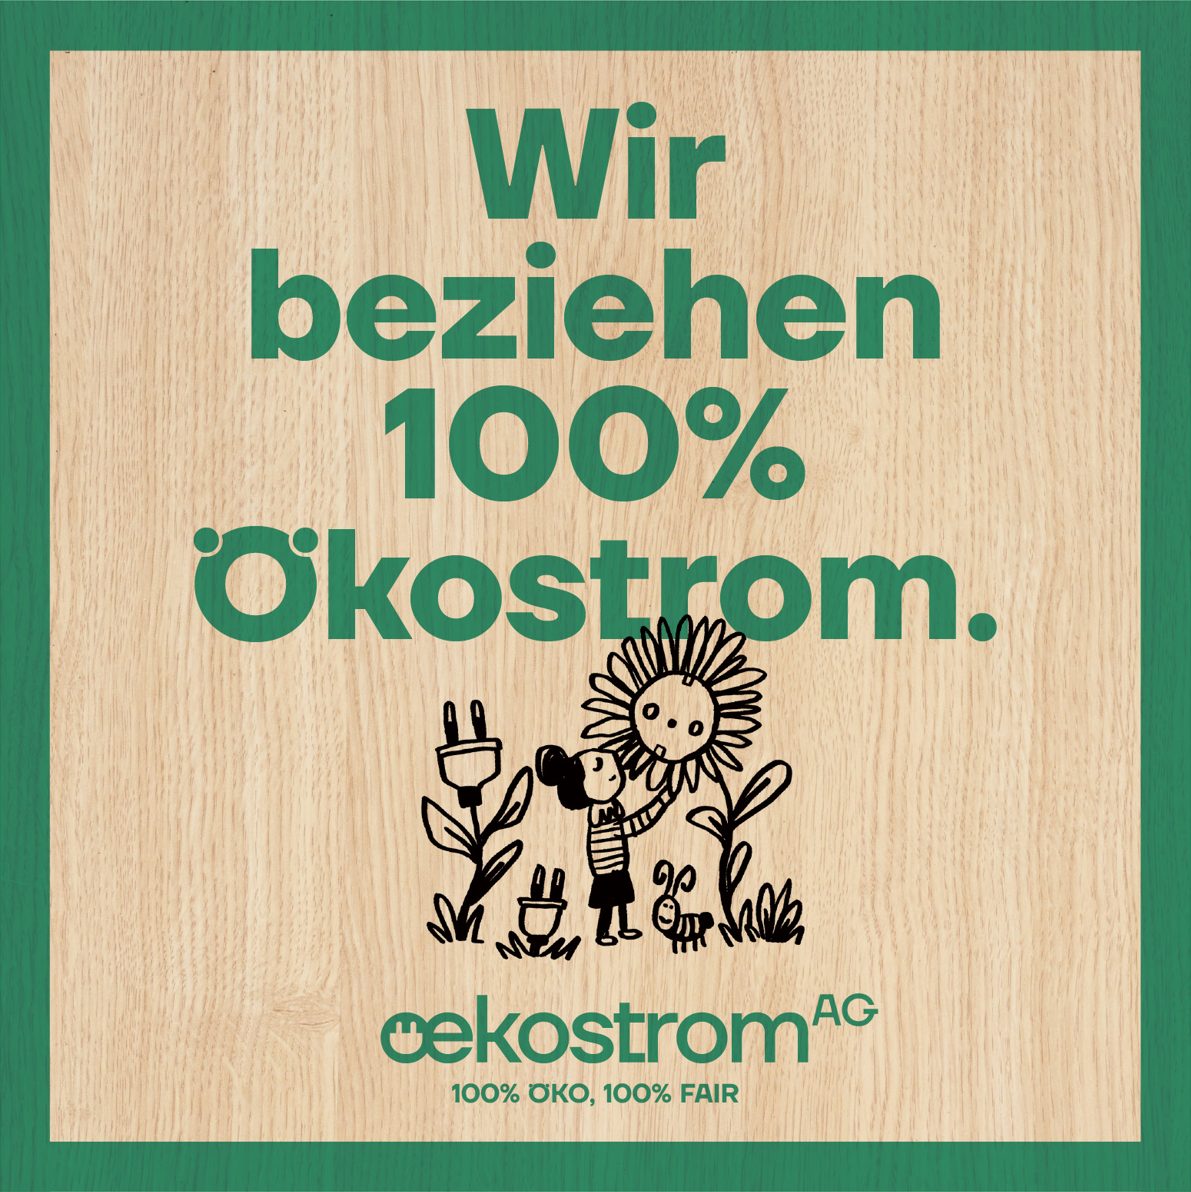 oekostrom AG Green Marketing Packet Schild